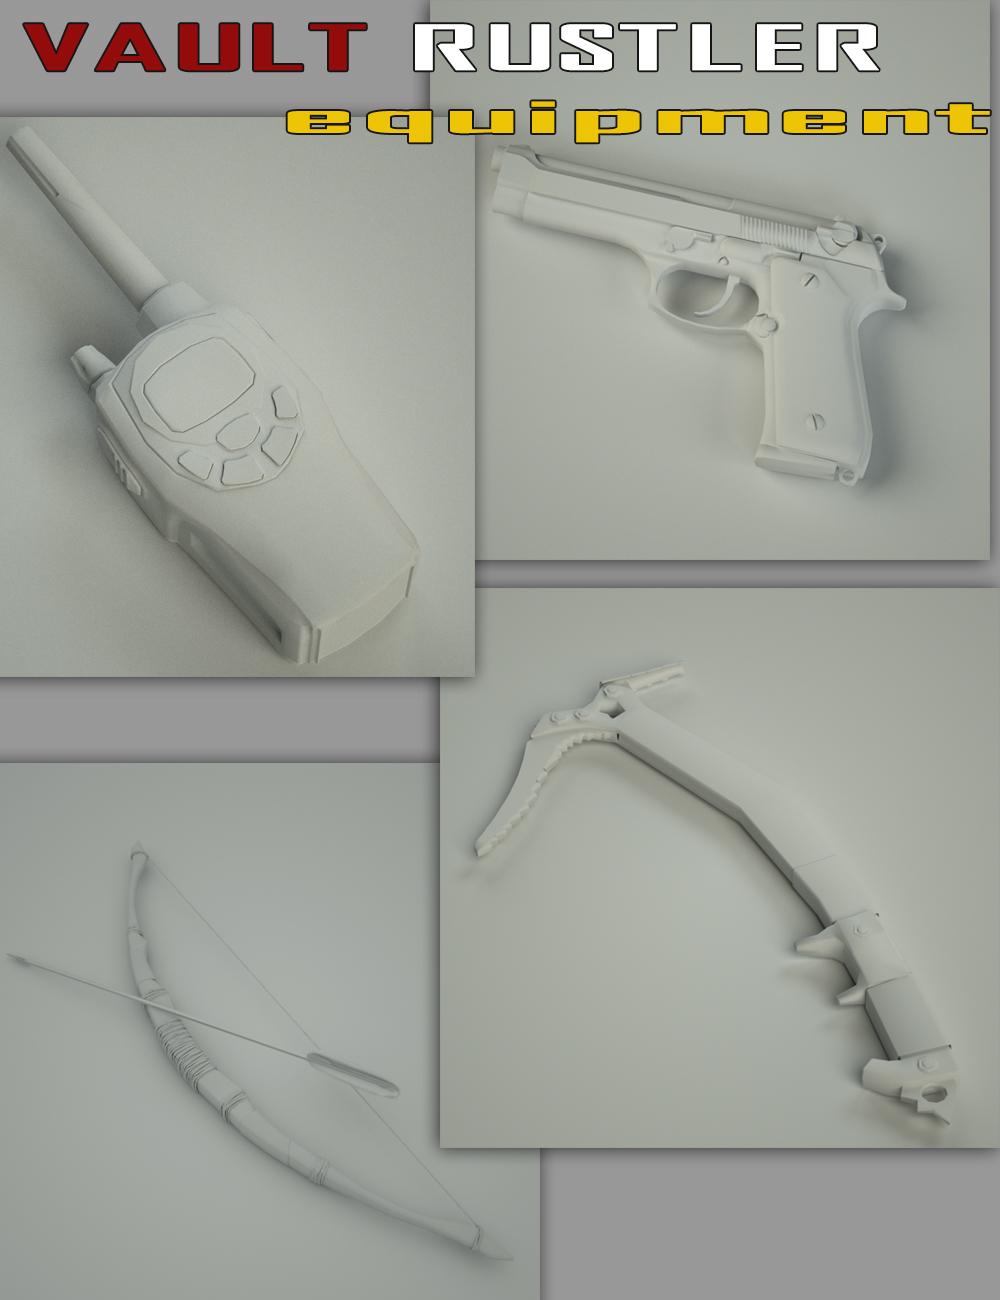 Vault Rustler Equipment by: Slide3D, 3D Models by Daz 3D